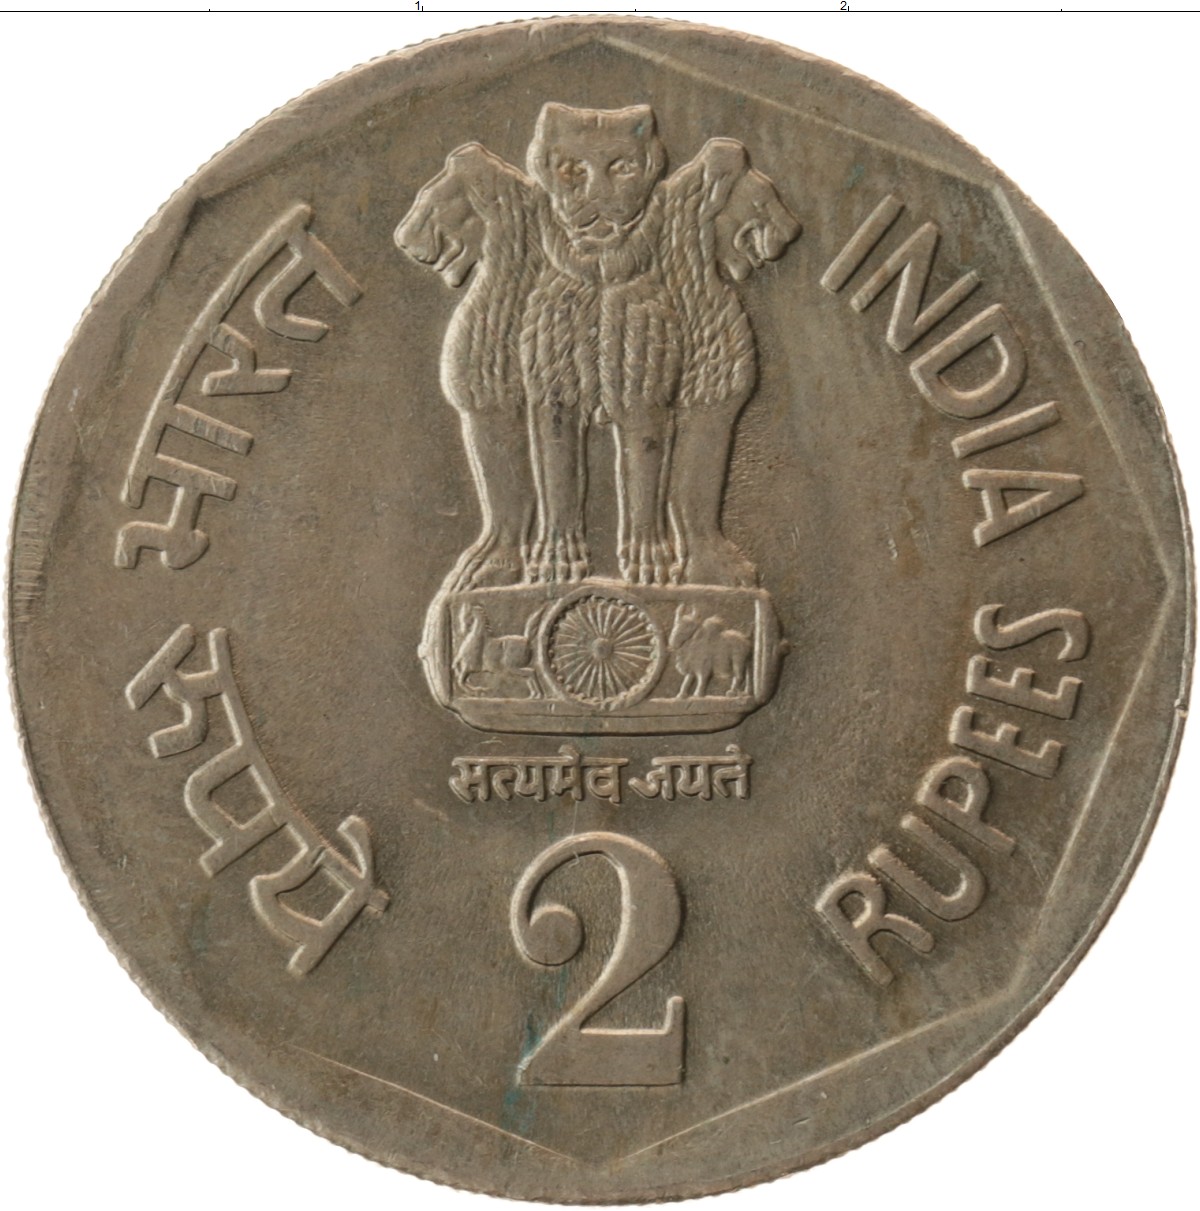 2 рупии в рублях. Монеты Индии 2 рупии. Монеты Индии современные. Рупии в рубли.